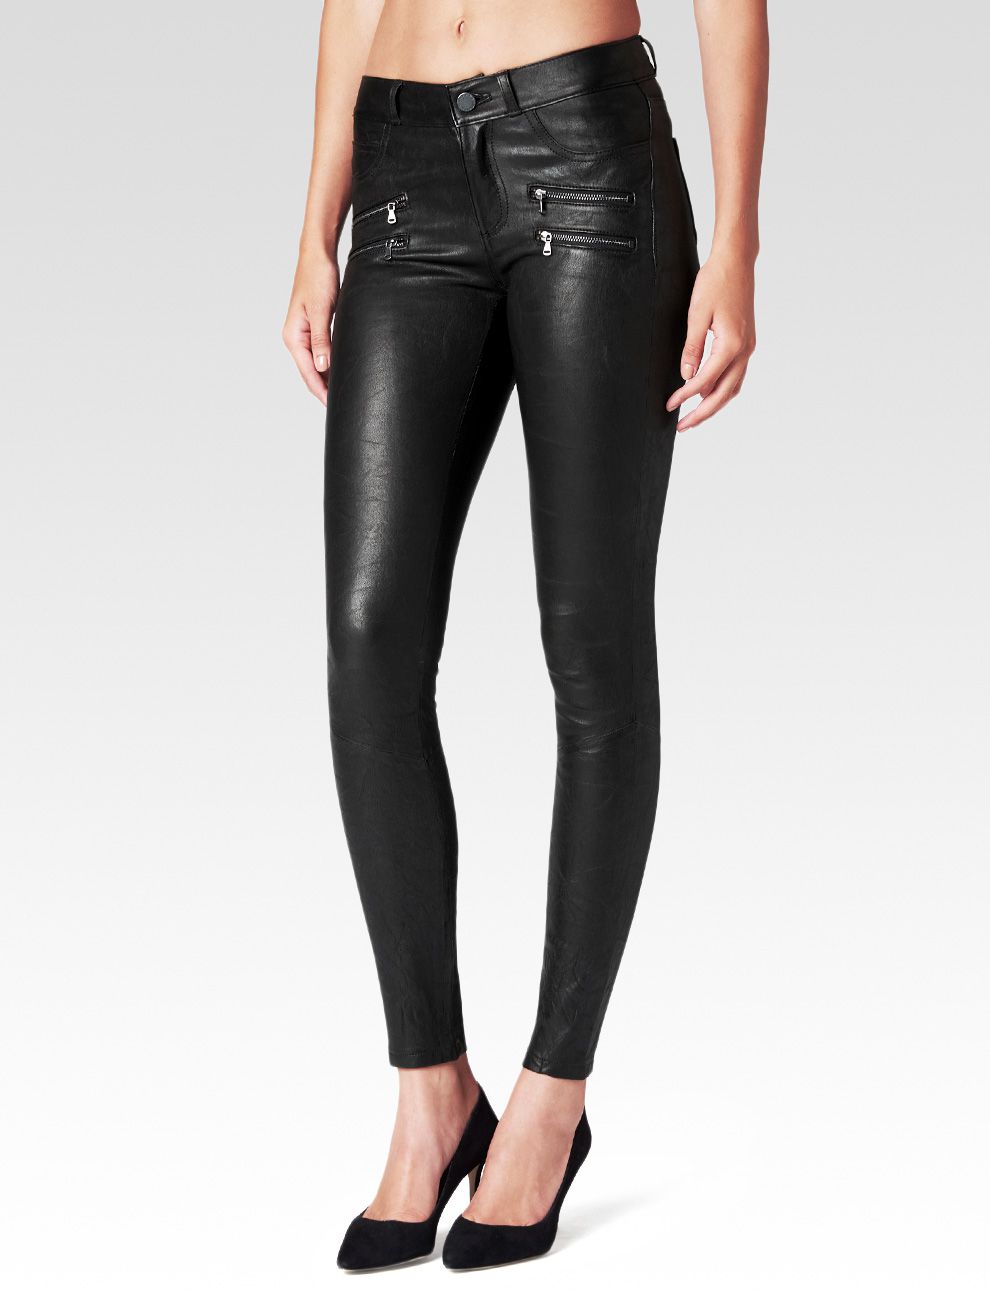 Paige Edgemont Skinny Leather Pants, $995